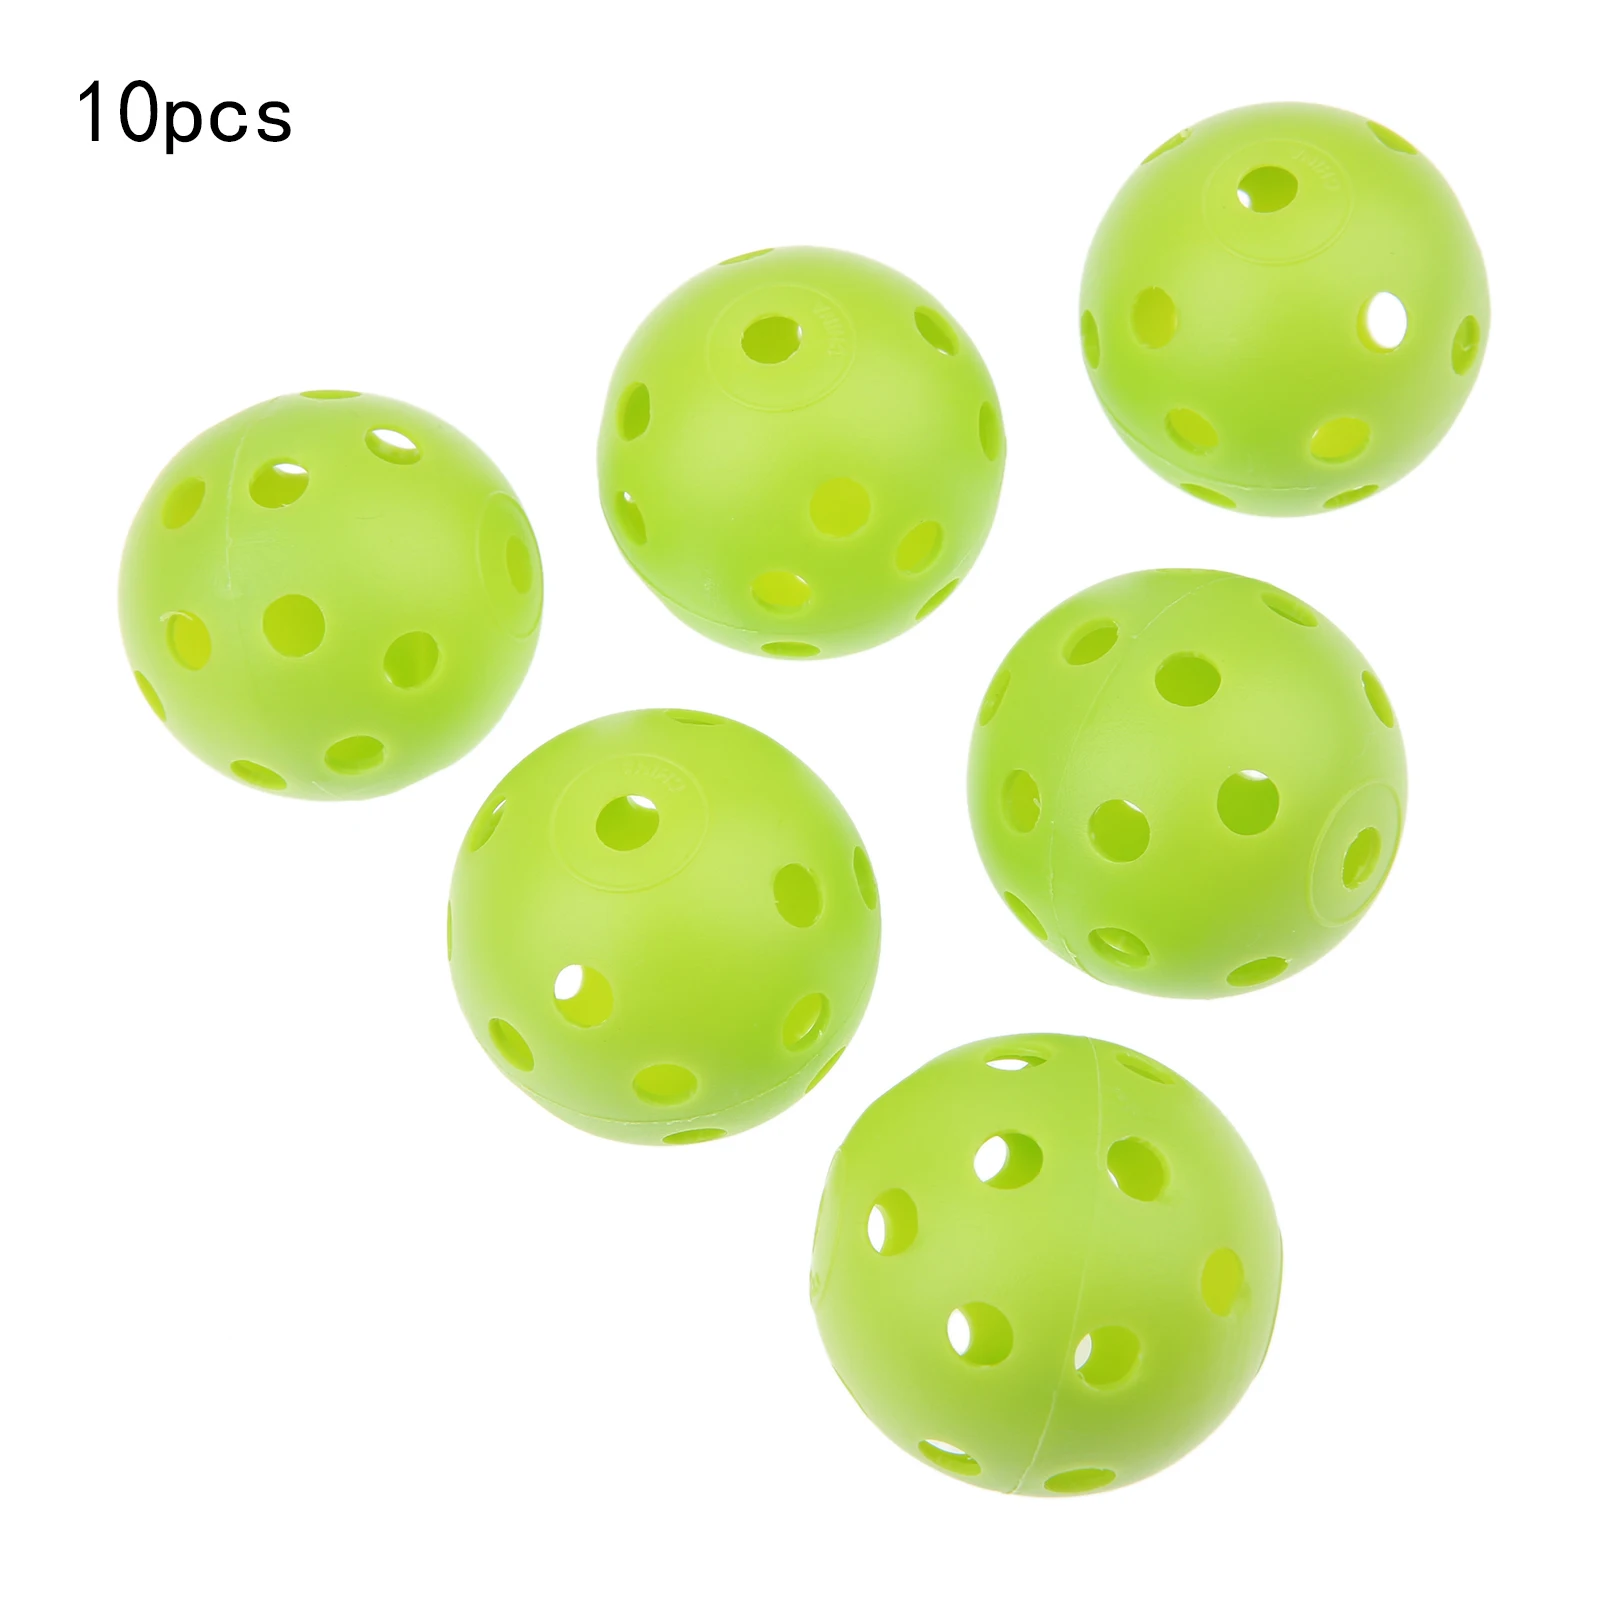 SURIEEN 10 шт Пластиковые Мячи для гольфа 41 мм воздушный поток полые с отверстием мячи для гольфа для внутреннего спорта на открытом воздухе тренировочные мячи для гольфа - Цвет: Green